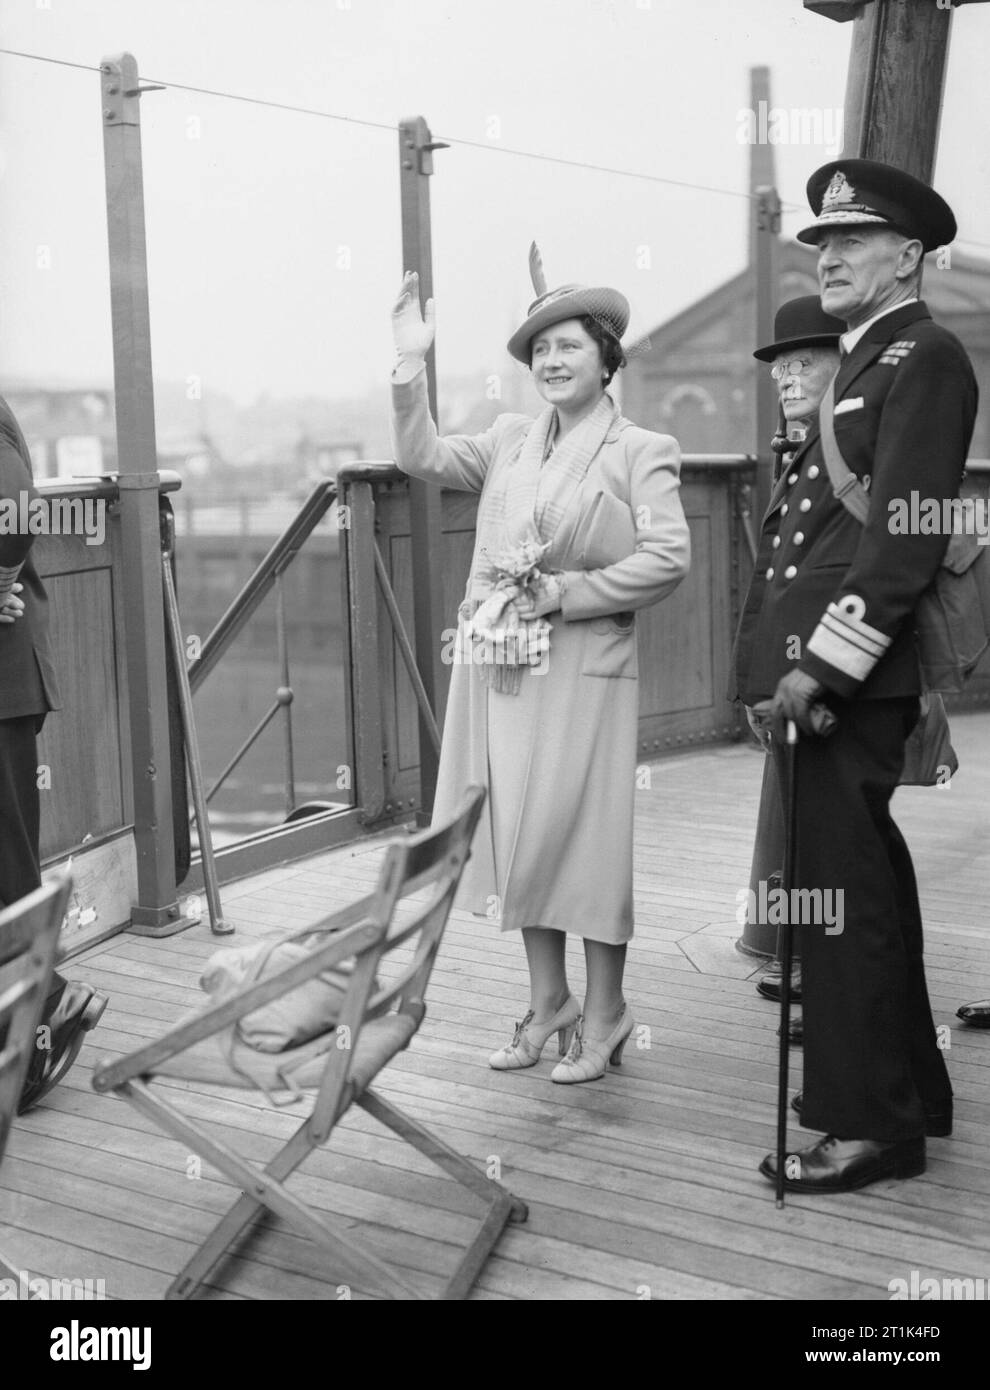 Königin Elizabeth auf der Brücke der SS Queen Mary quittieren Beifall von den vorbeifahrenden Schiffen während einer Fahrt auf dem Clyde, 4. Juni 1942. Königin Elizabeth stand auf der Brücke der SS Queen Mary quittieren Beifall von den vorbeifahrenden Schiffen während einer Fahrt auf dem Clyde. Mit ihr ist Vice Admiral J A G Troup, CB. Stockfoto